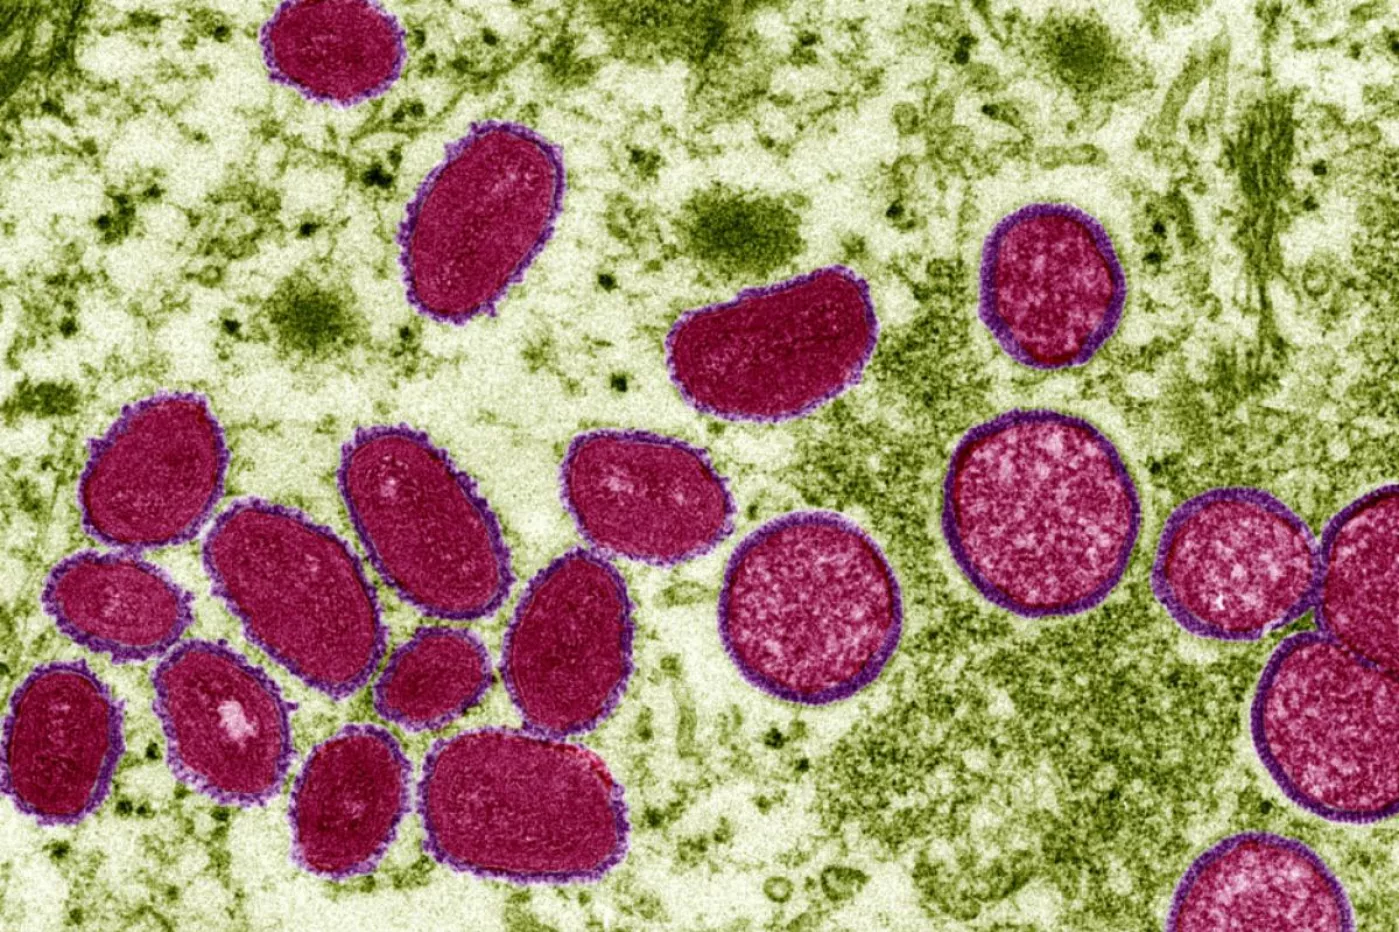 Imagen microscópica del virus de la viruela del mono. Foto: AGESPHOTOSTOCK